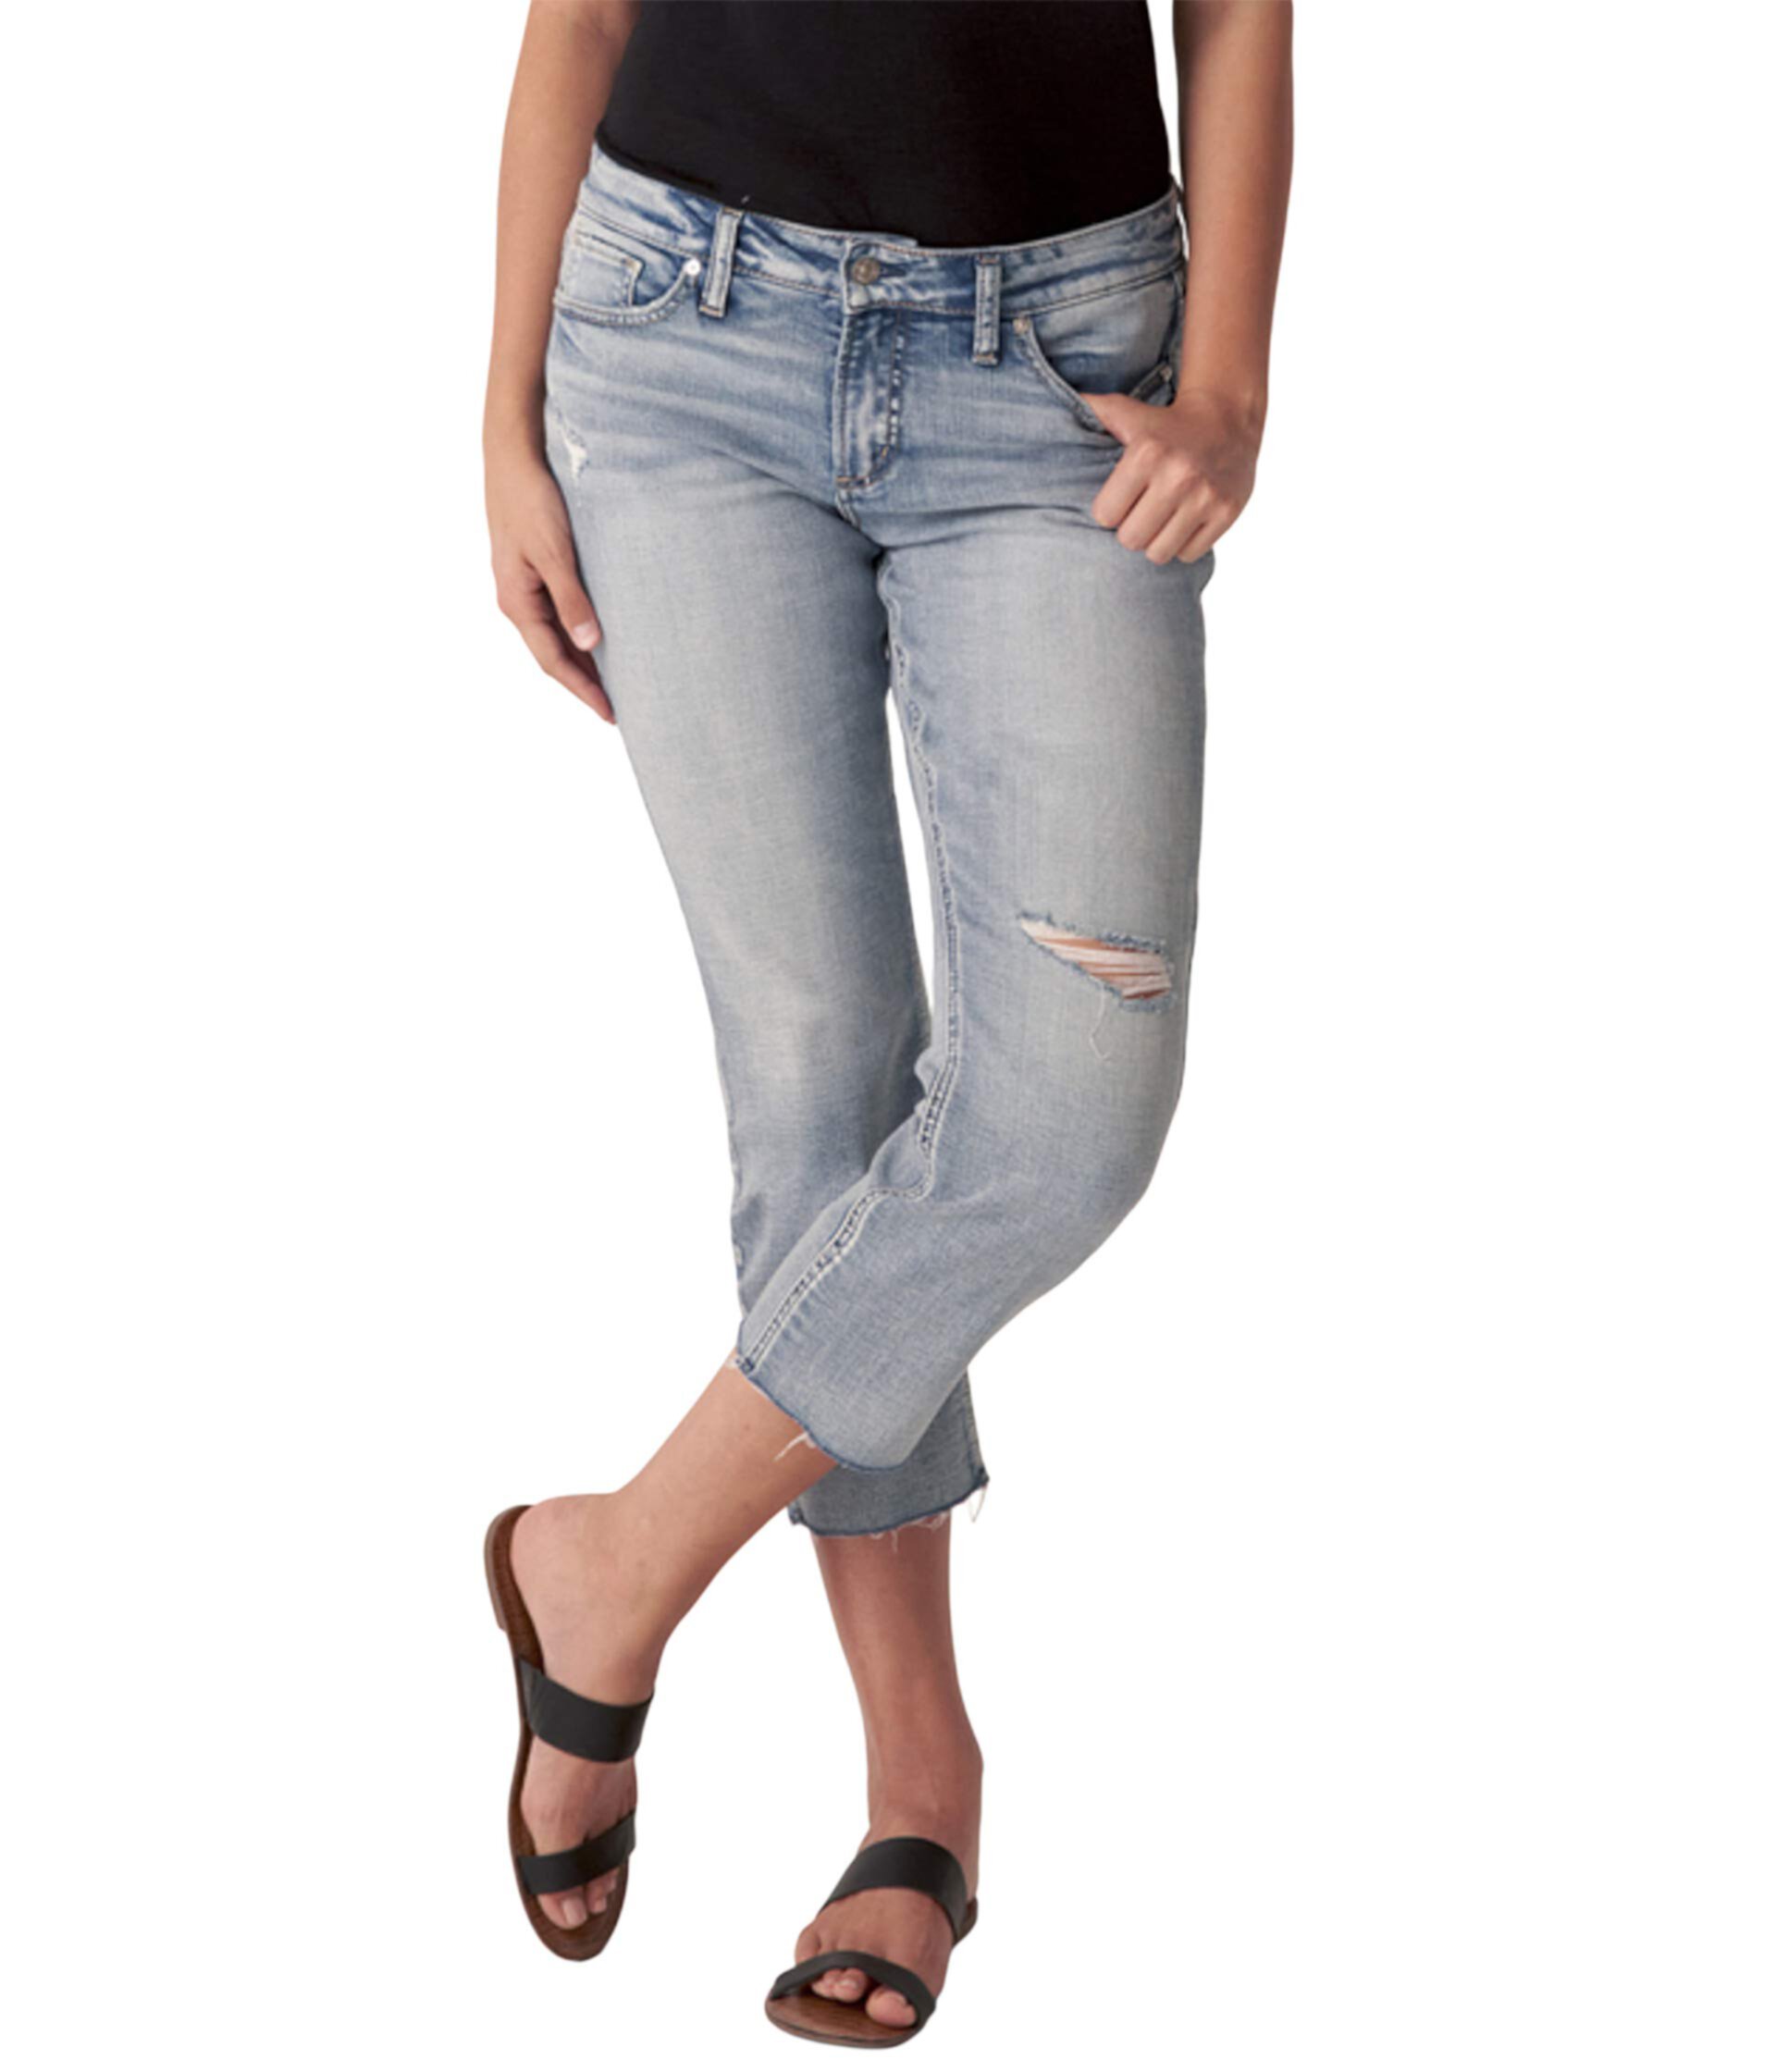 Прямые укороченные джинсы Elyse Curvy Fit со средней посадкой L43031EPK284 Silver Jeans Co.